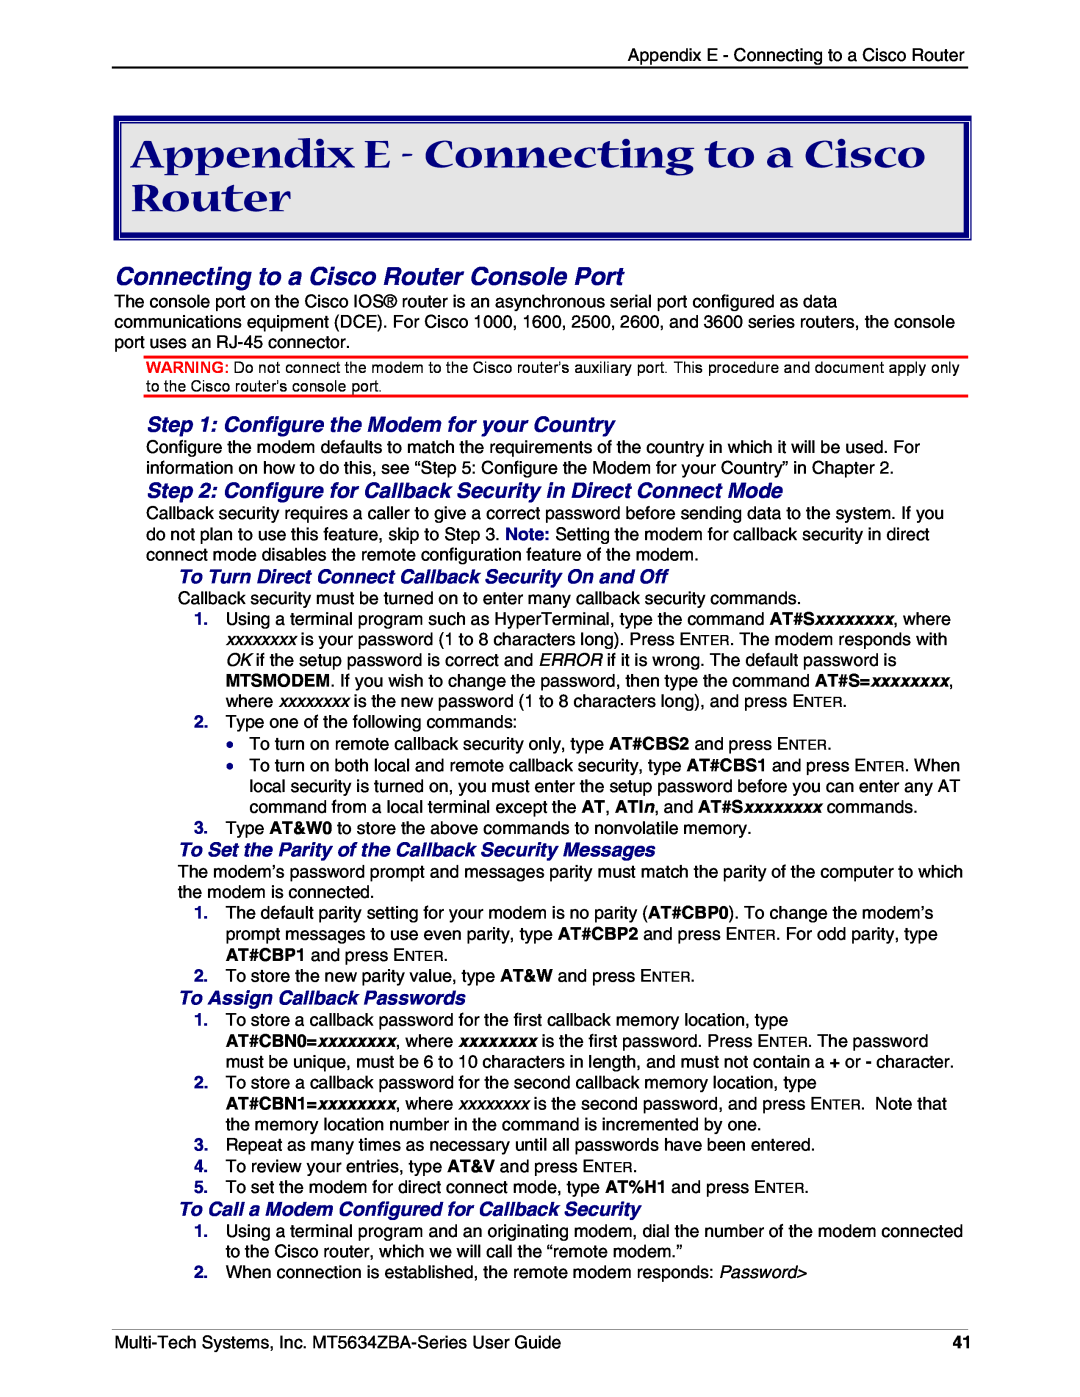 Multi-Tech Systems MT5634ZBAV.92 Appendix E - Connecting to a Cisco Router, Connecting to a Cisco Router Console Port 